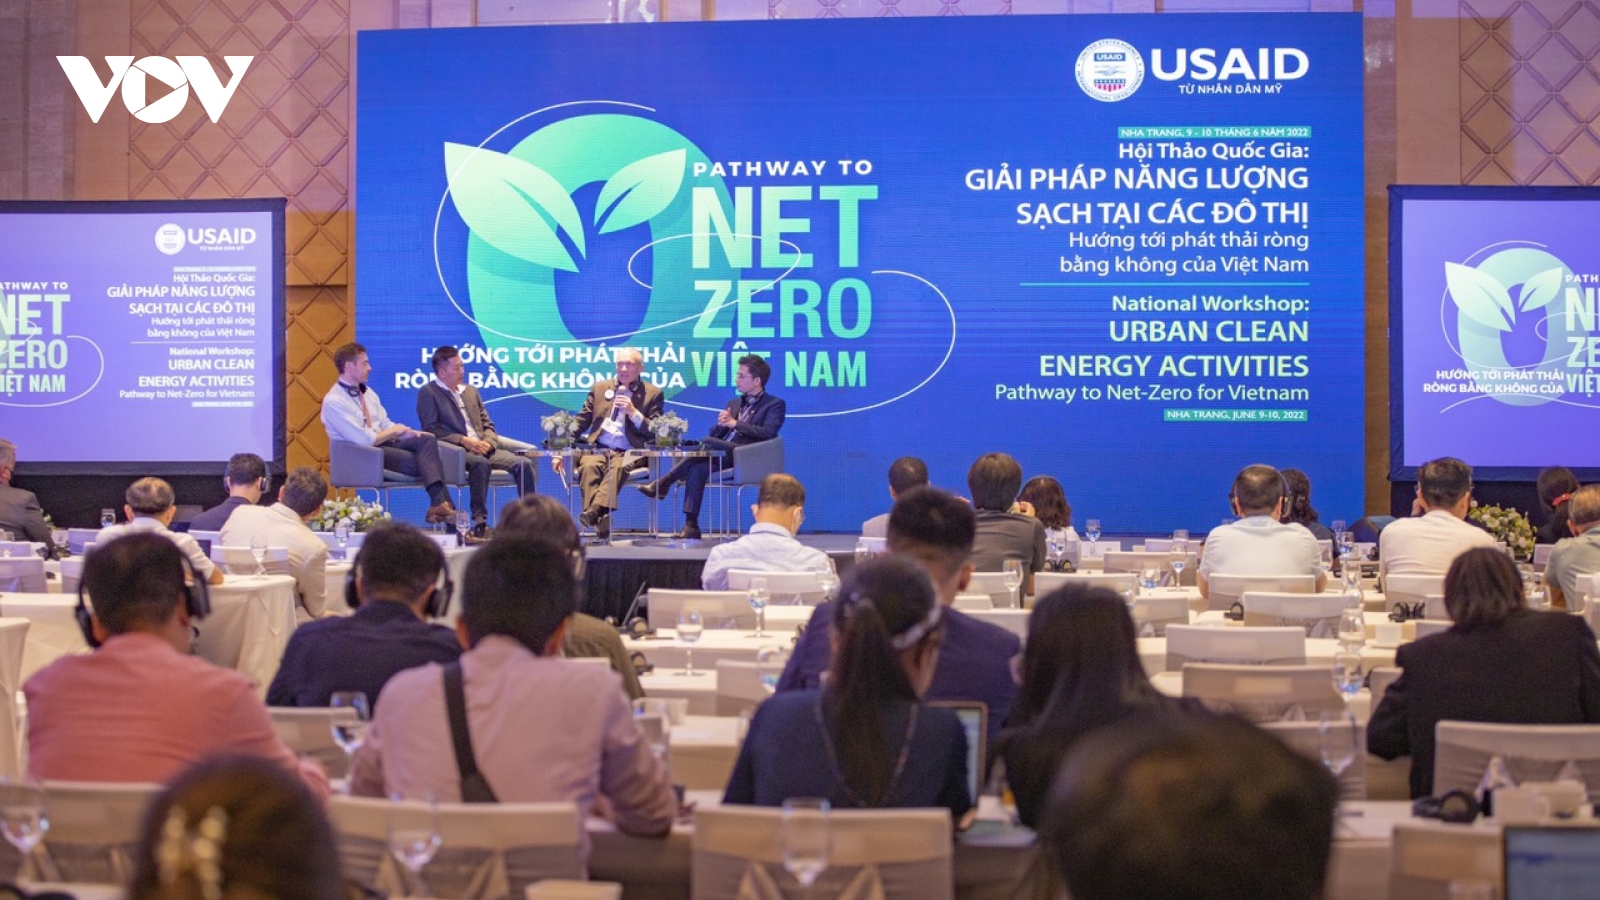 Chuyên gia bàn giải pháp năng lượng sạch tại các đô thị ở Việt Nam